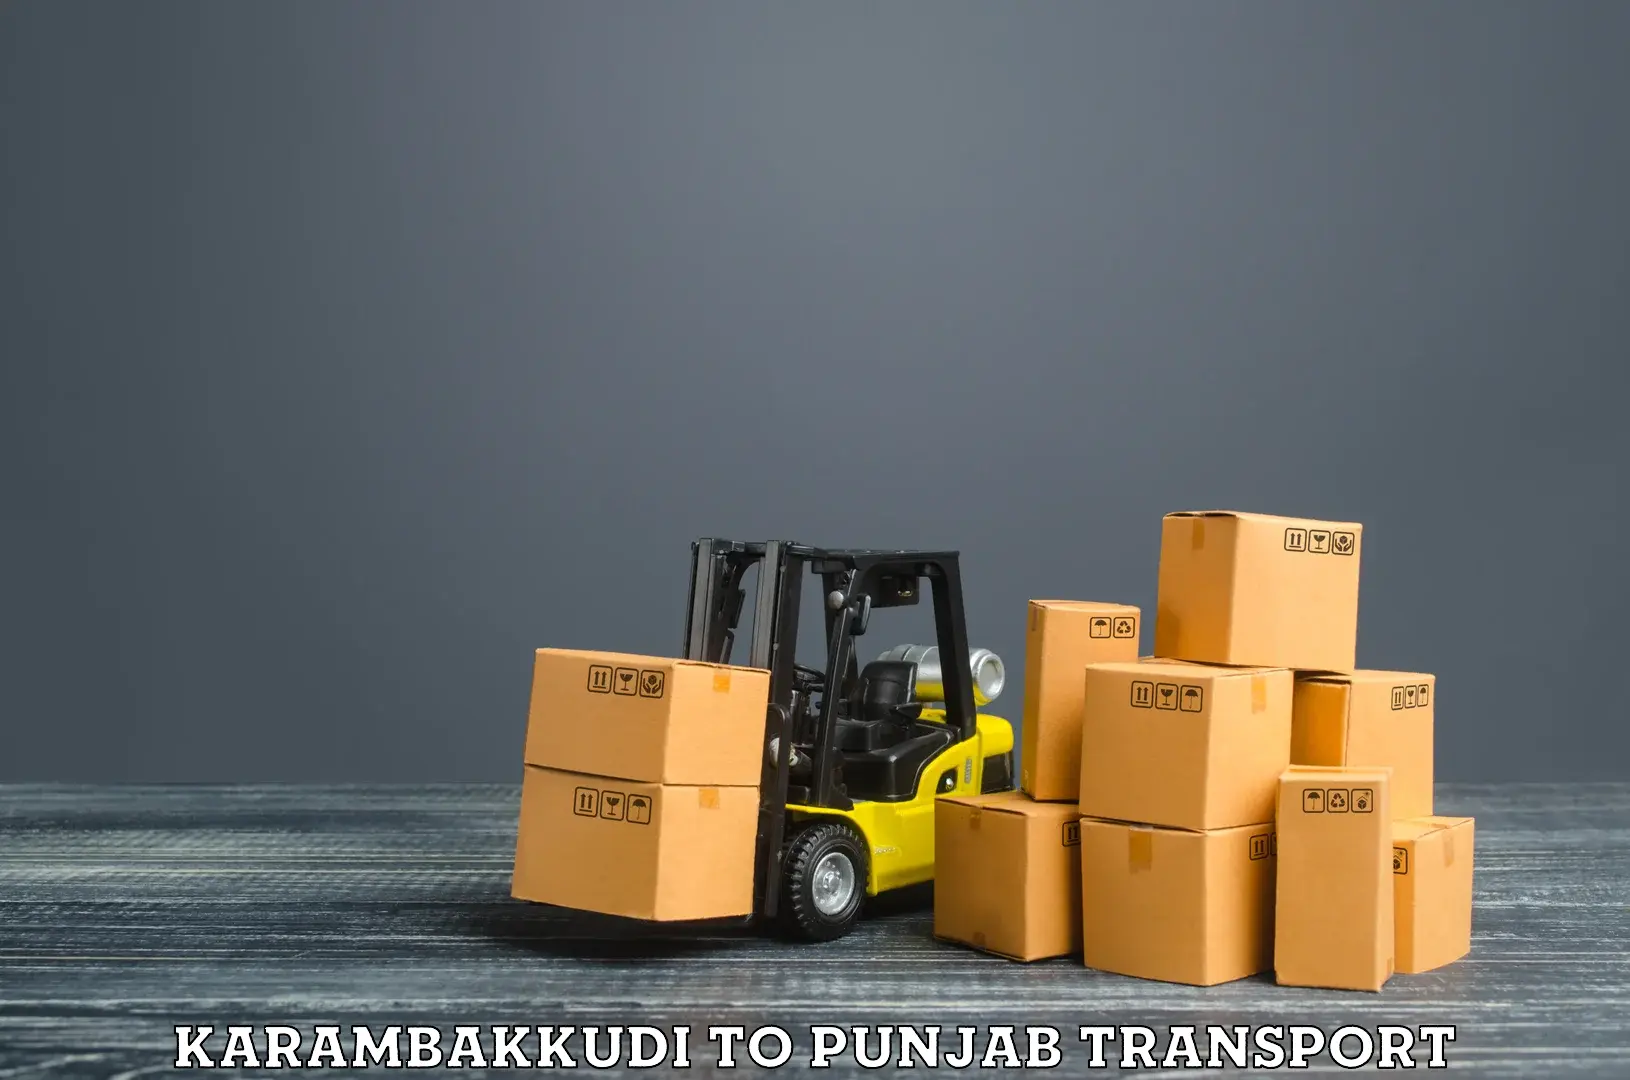 Land transport services Karambakkudi to Barnala